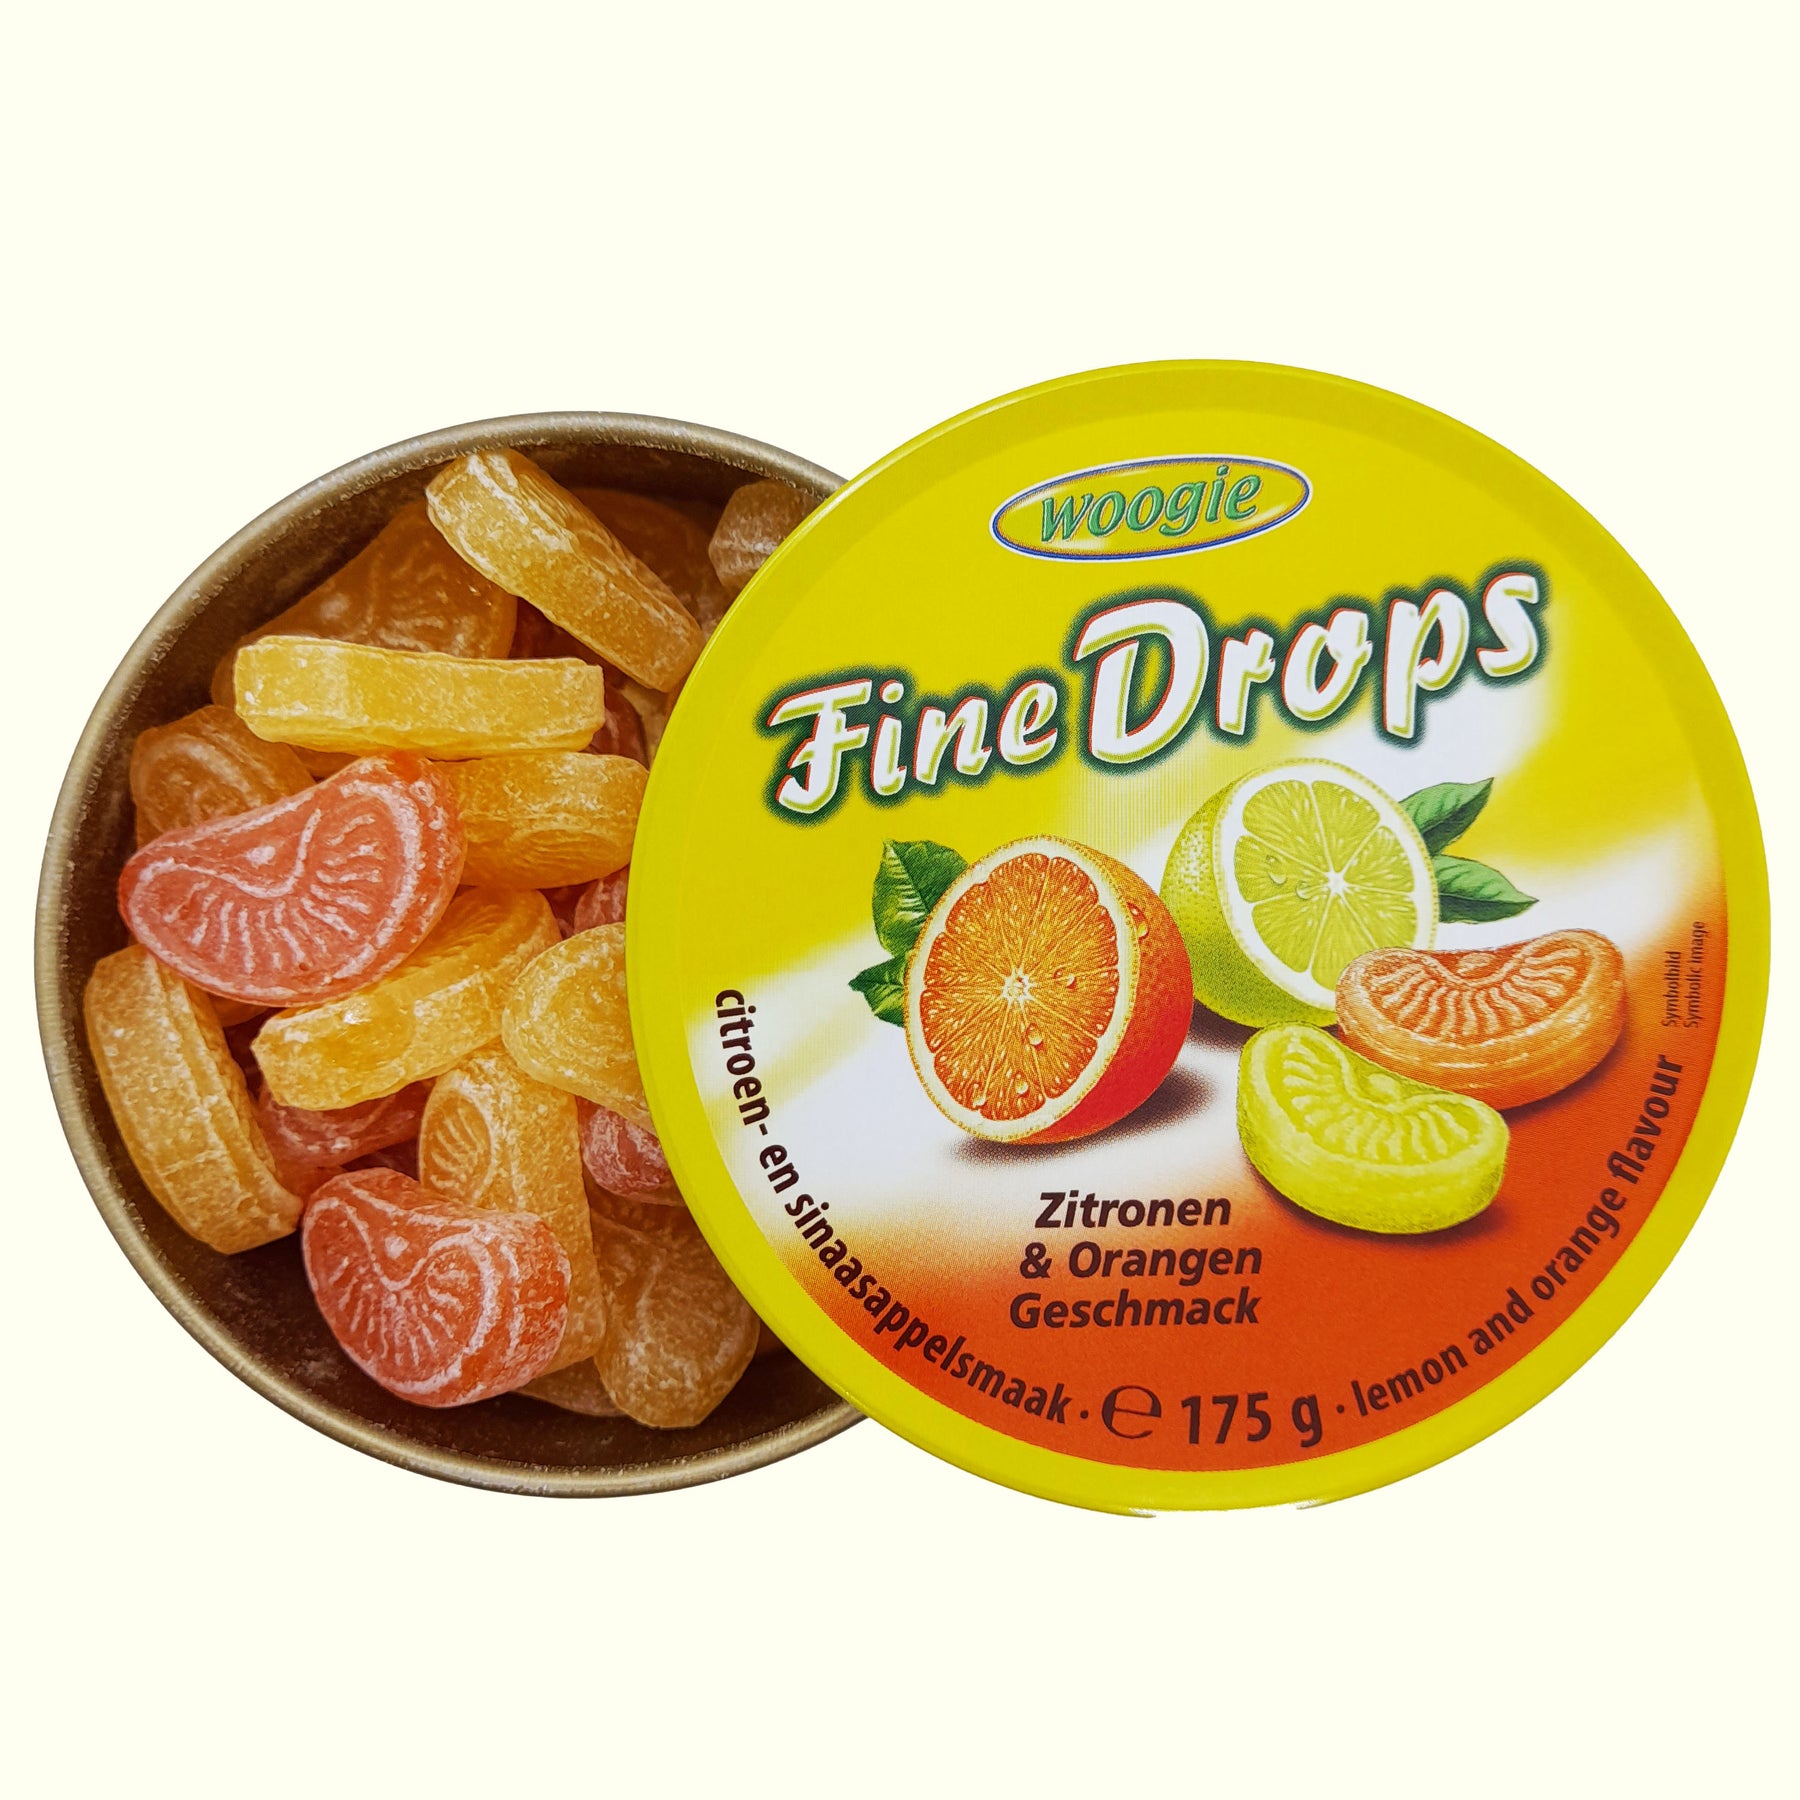 Woogie Fine Drops Zitronen & Orangen Geschmack 175g